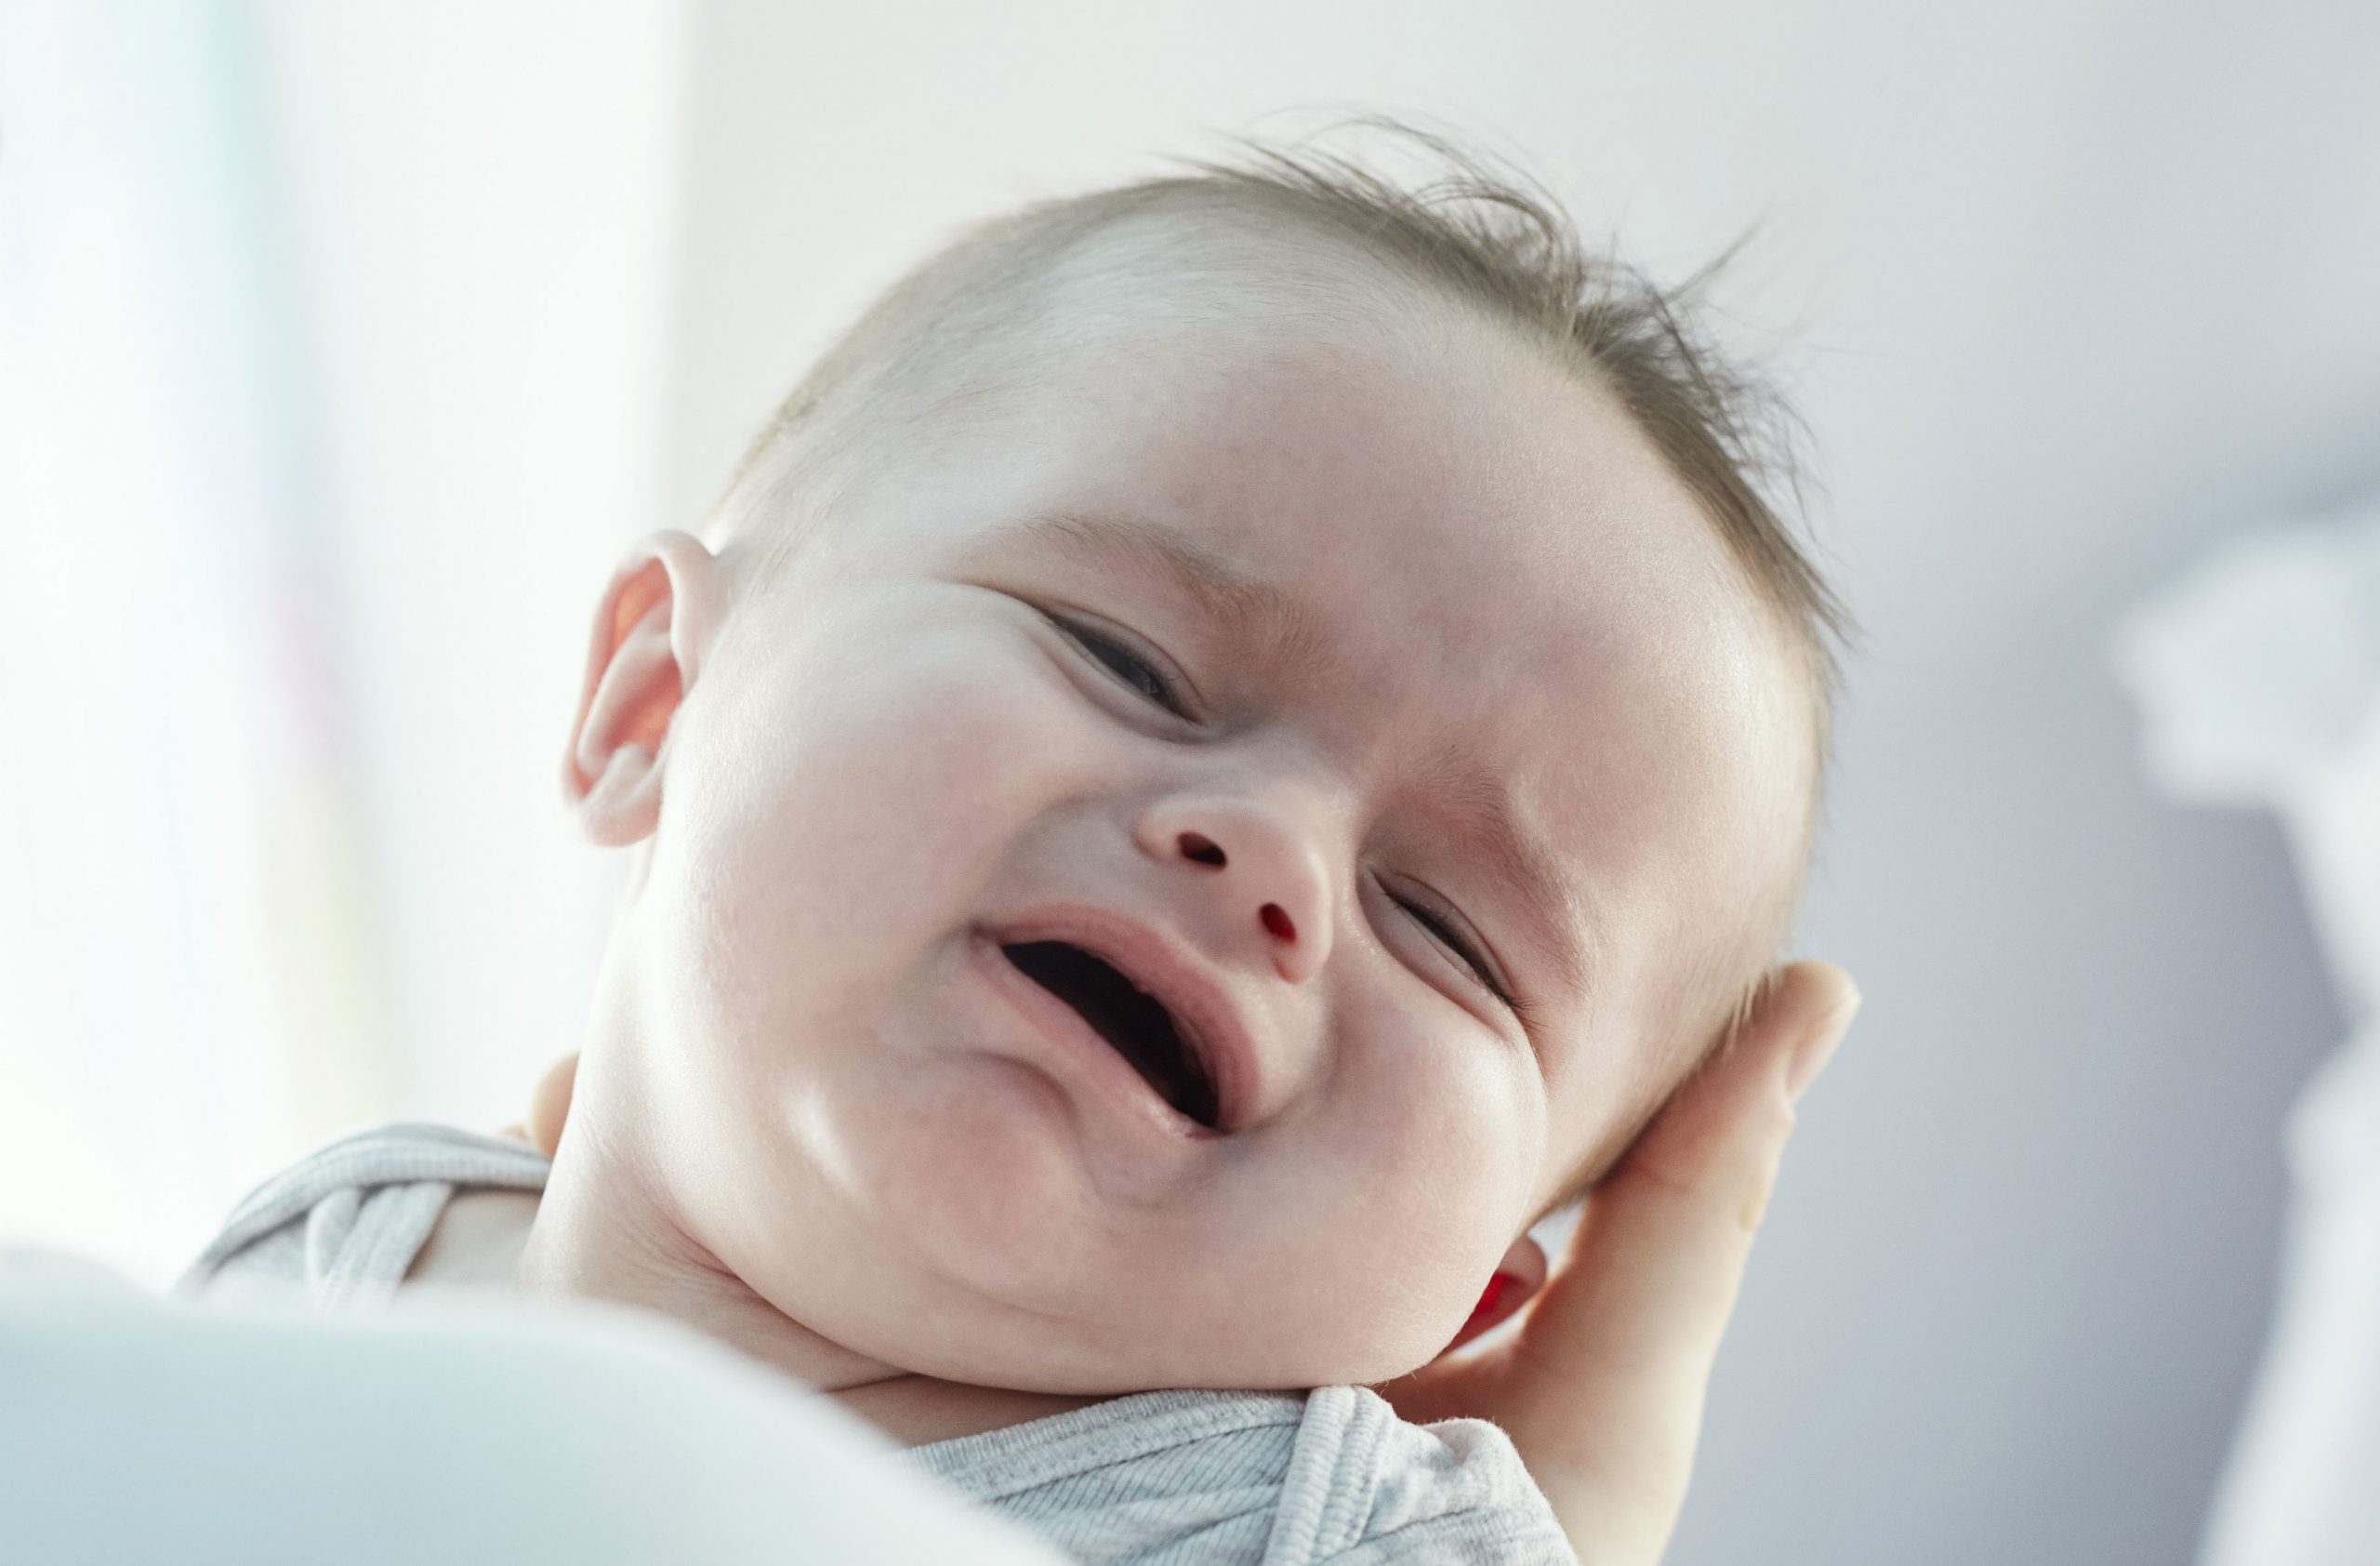 بدن کوچک نوزاد نوازد شما نمی تواند مایعات زیادی را در خود ذخیره کند؛ بنابراین کمبود آب بدن نوزاد سریع اتفاق می افتد. 